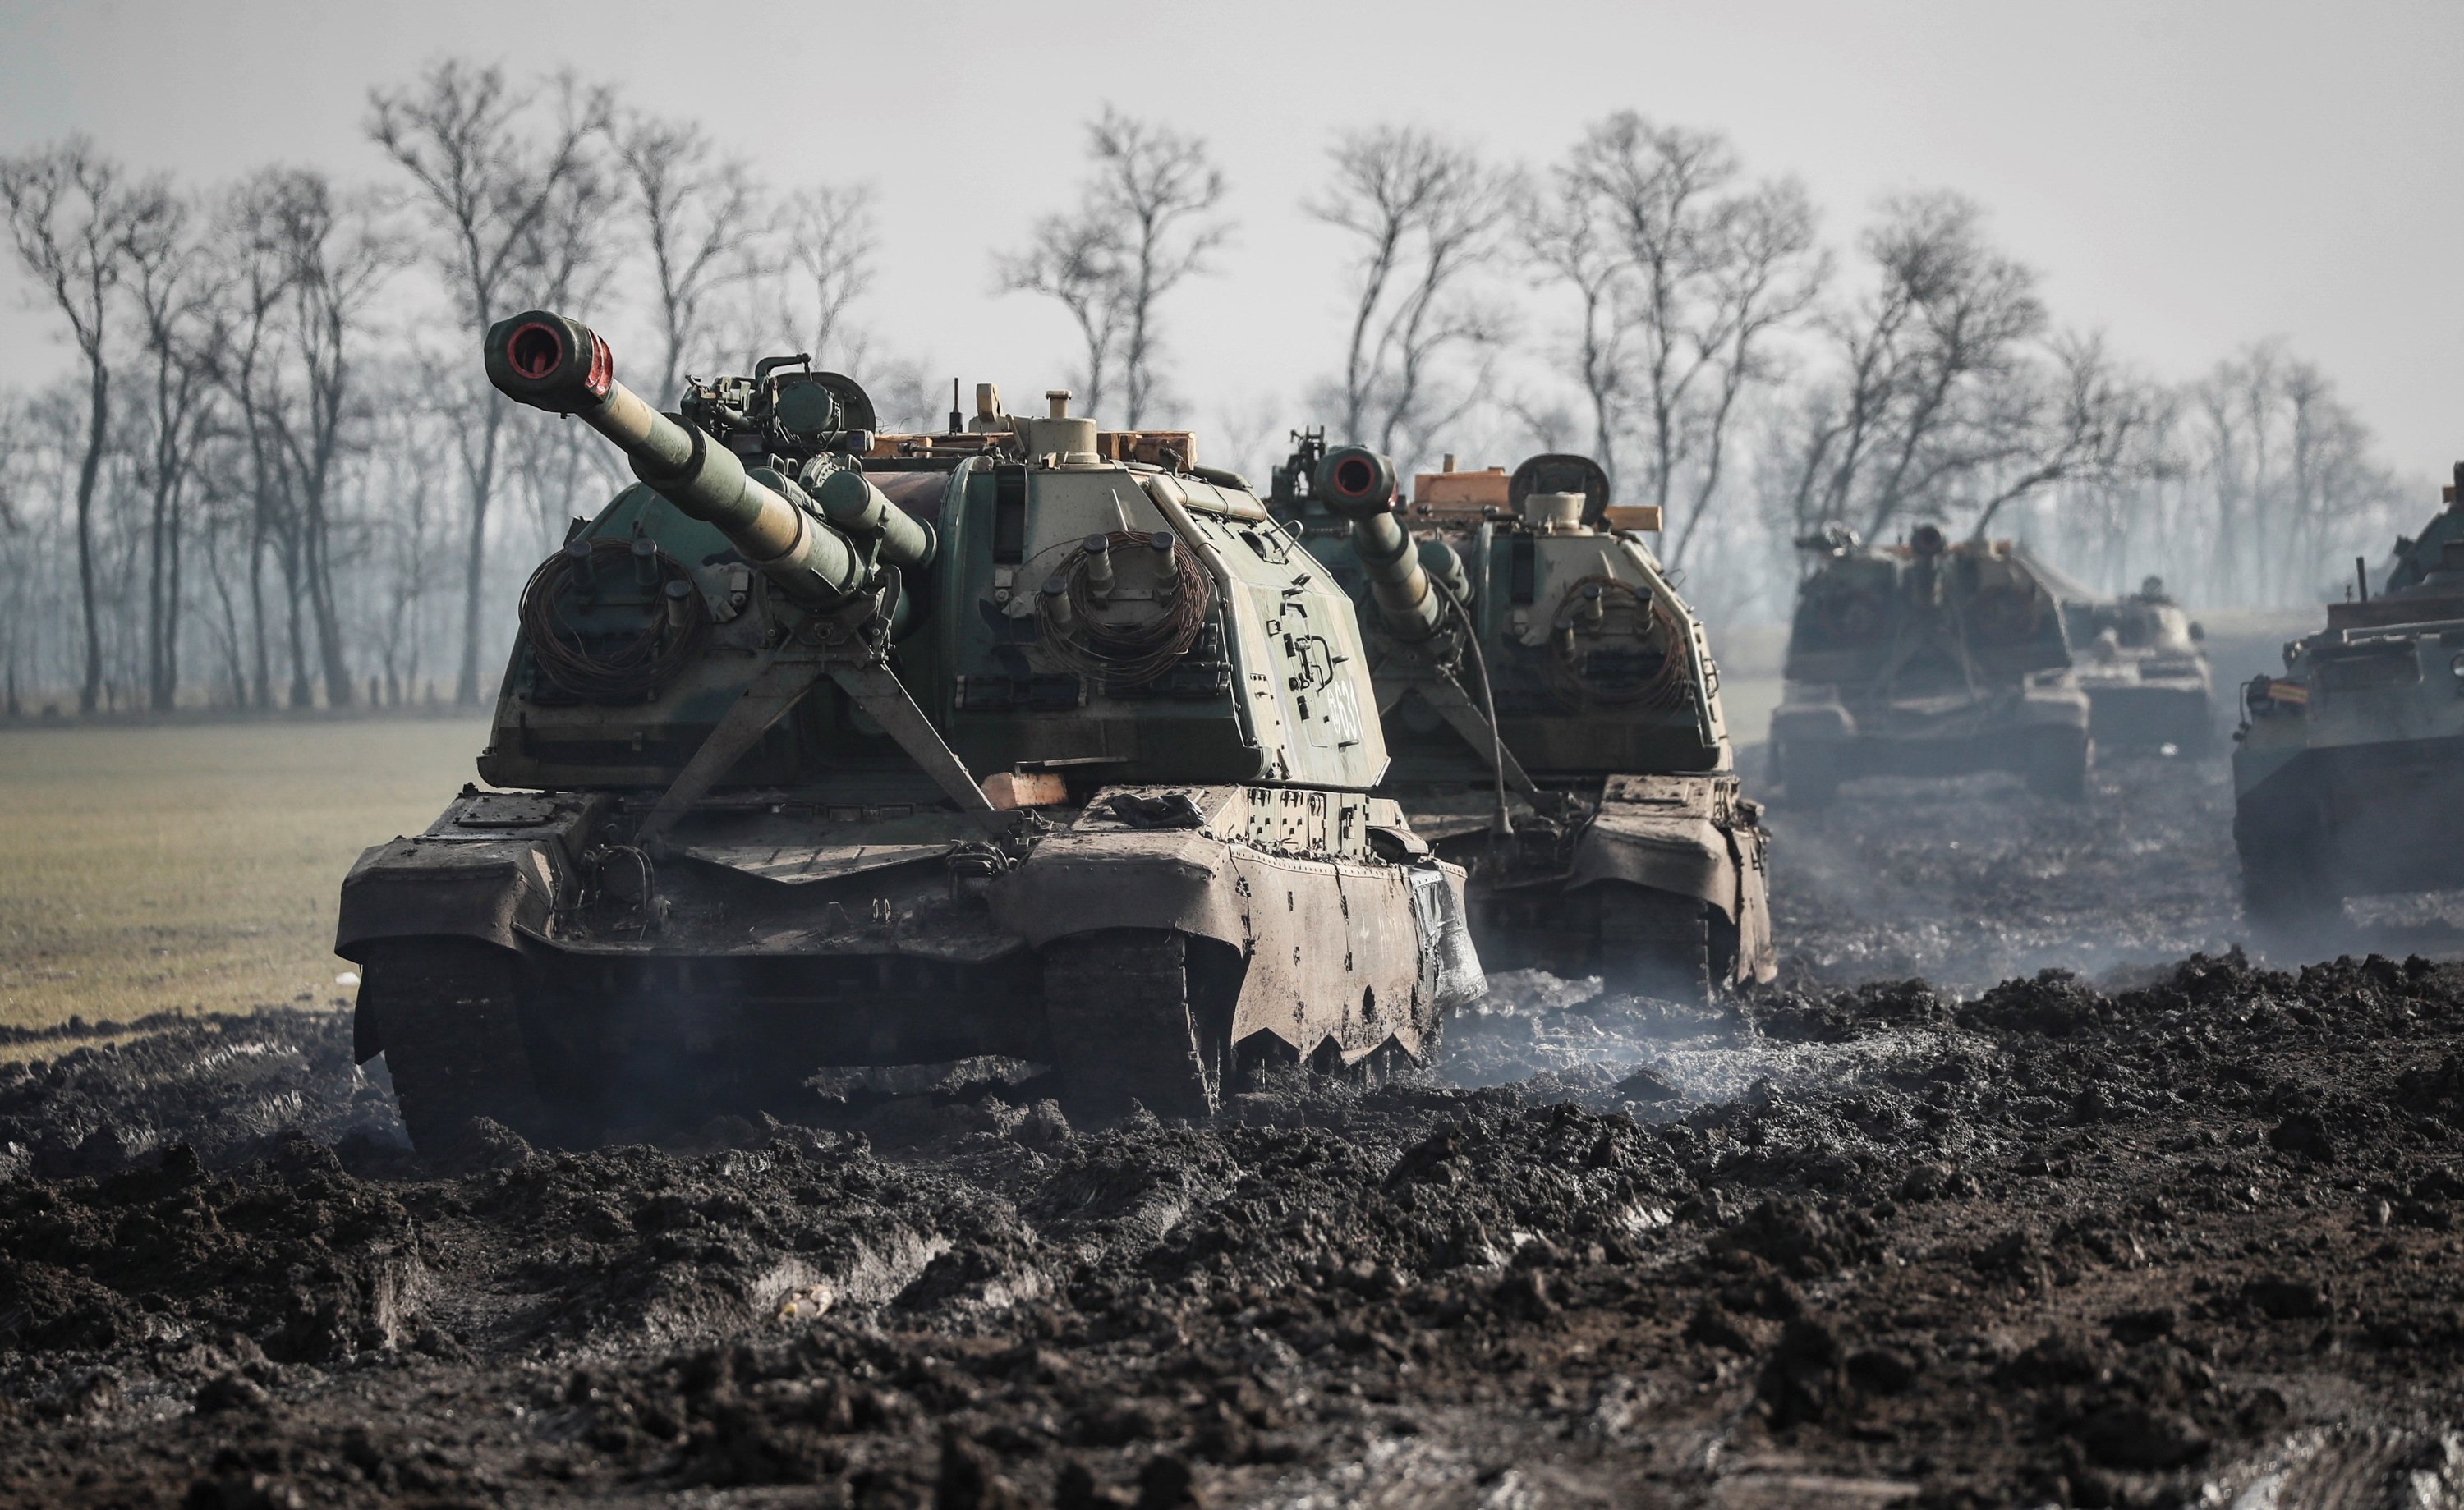 Què són les marques en els tancs russos que han entrat a Ucraïna?